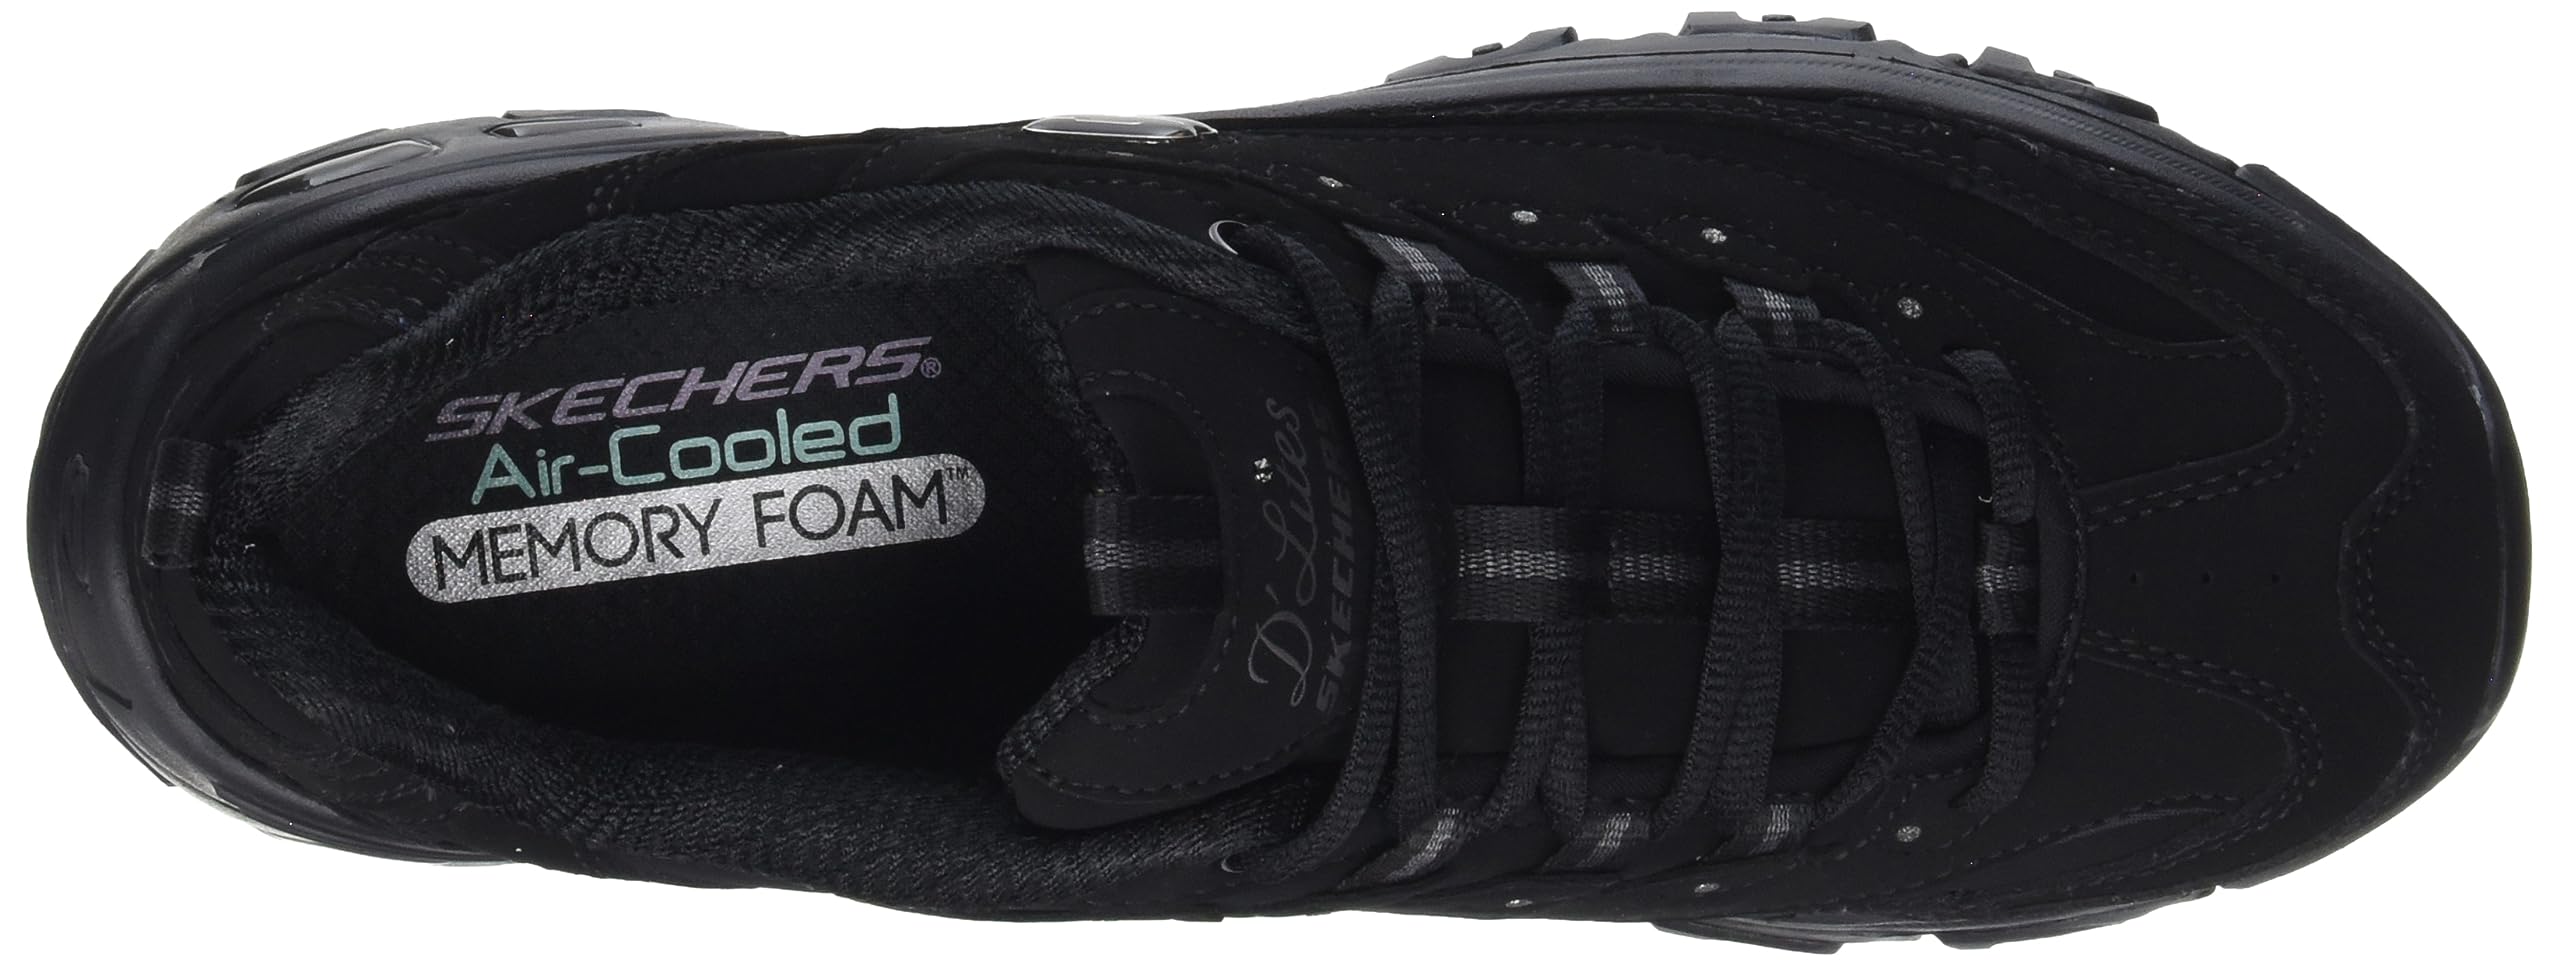 Skechers Women's D'Lites Memory Foam Lace-up Sneaker